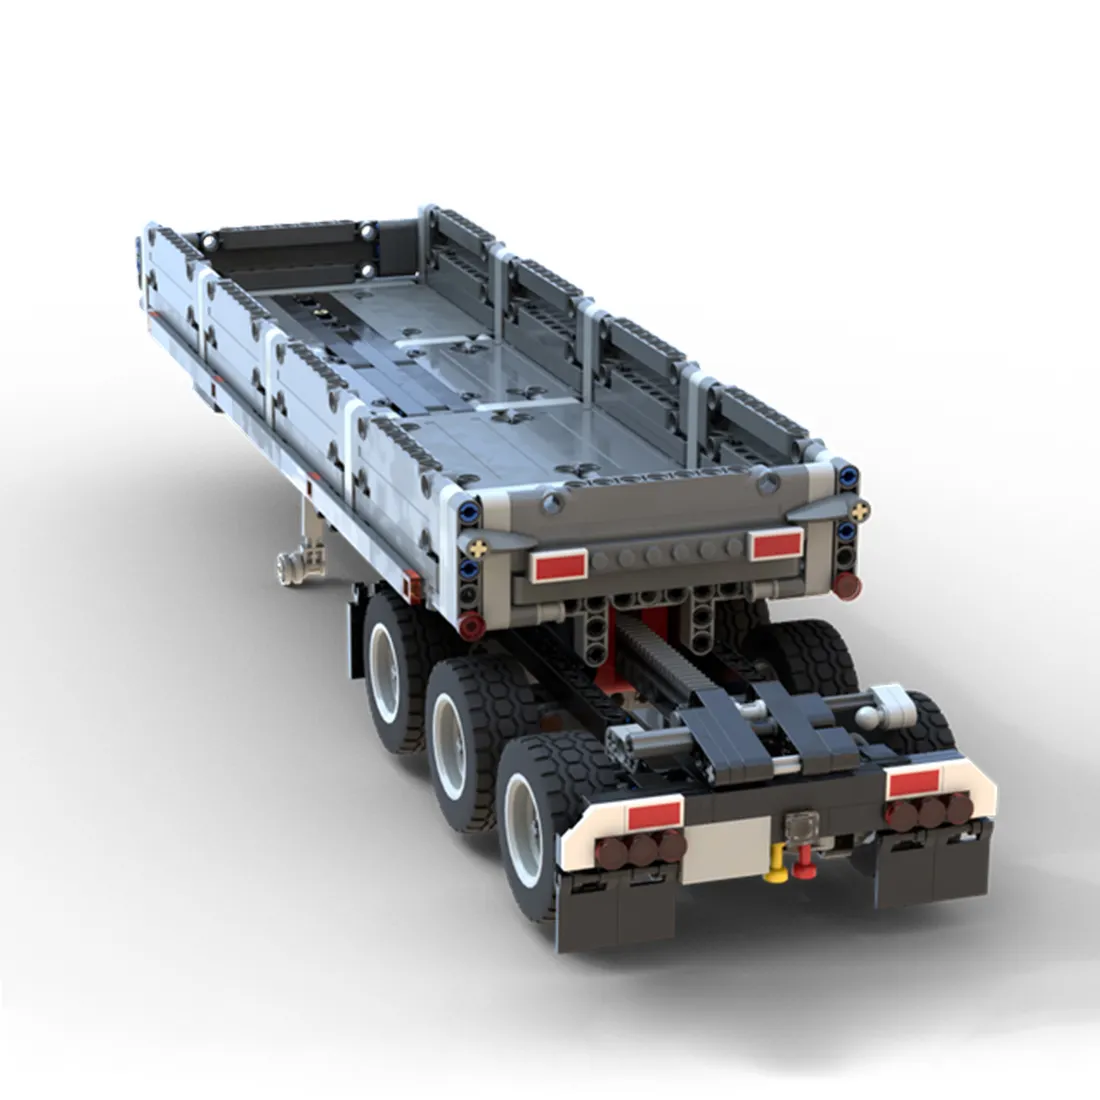 640Pcs Moc संशोधन किट ट्रक सिर legoing कलाओं मैक ट्रक 42078 के लिए विधानसभा ट्रेलर मॉडल शैक्षिक बच्चों के खिलौने